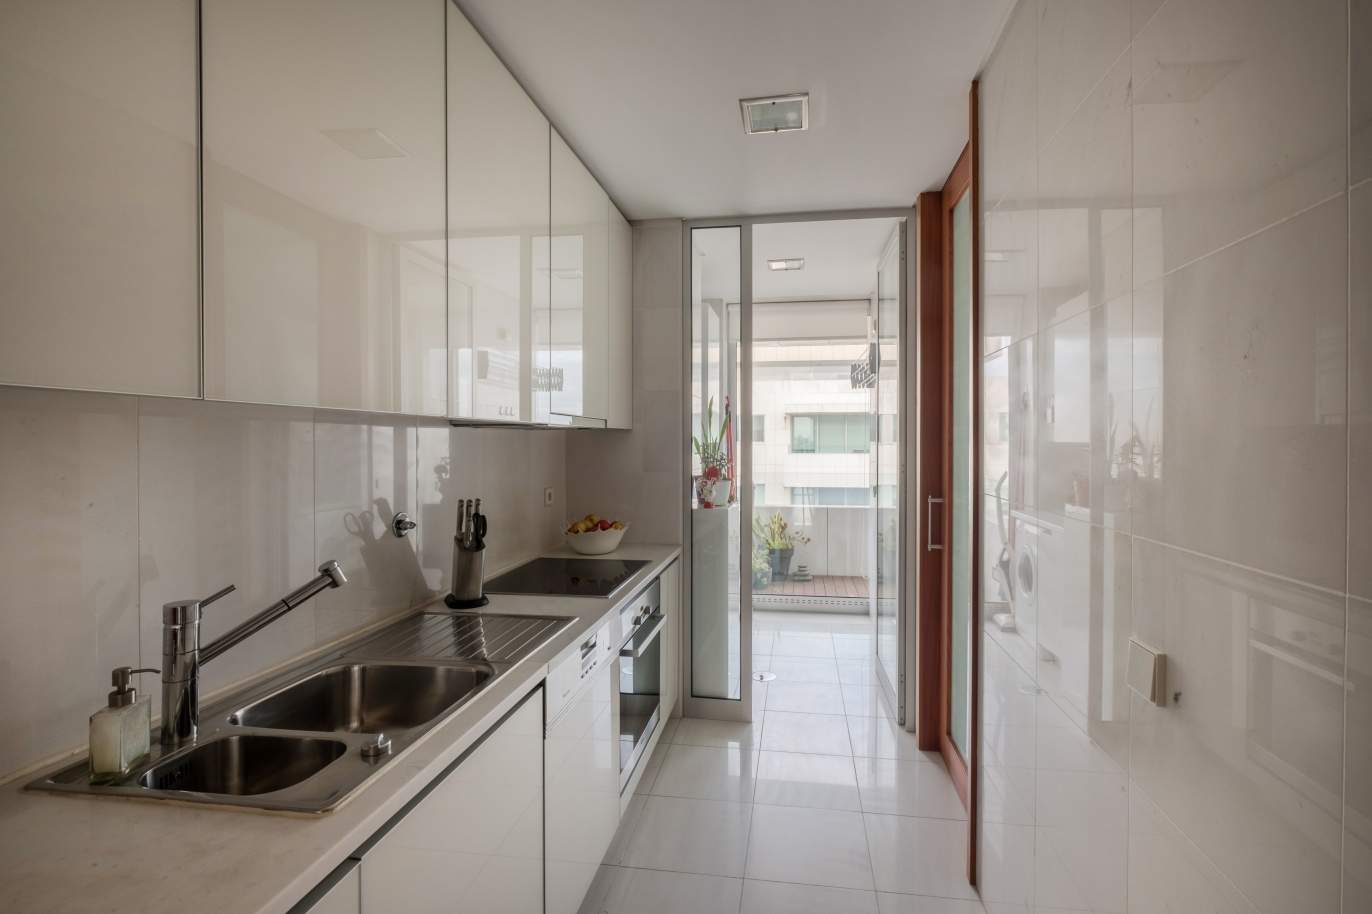 Venda de apartamento moderno, com vistas mar, Leça da Palmeira, Porto_156120